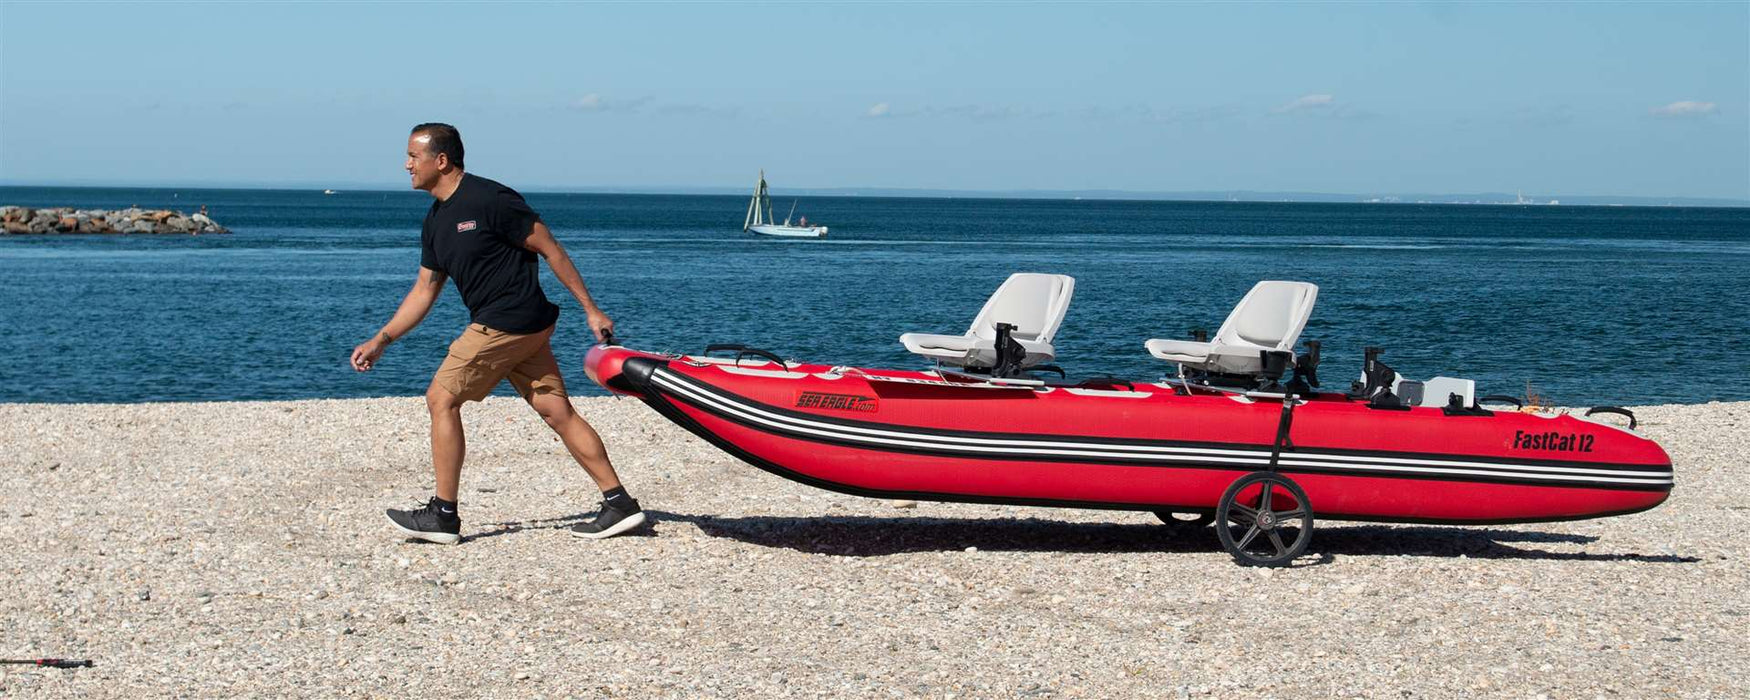 Sea Eagle FastCat12™ Catamaran Inflatable Boat